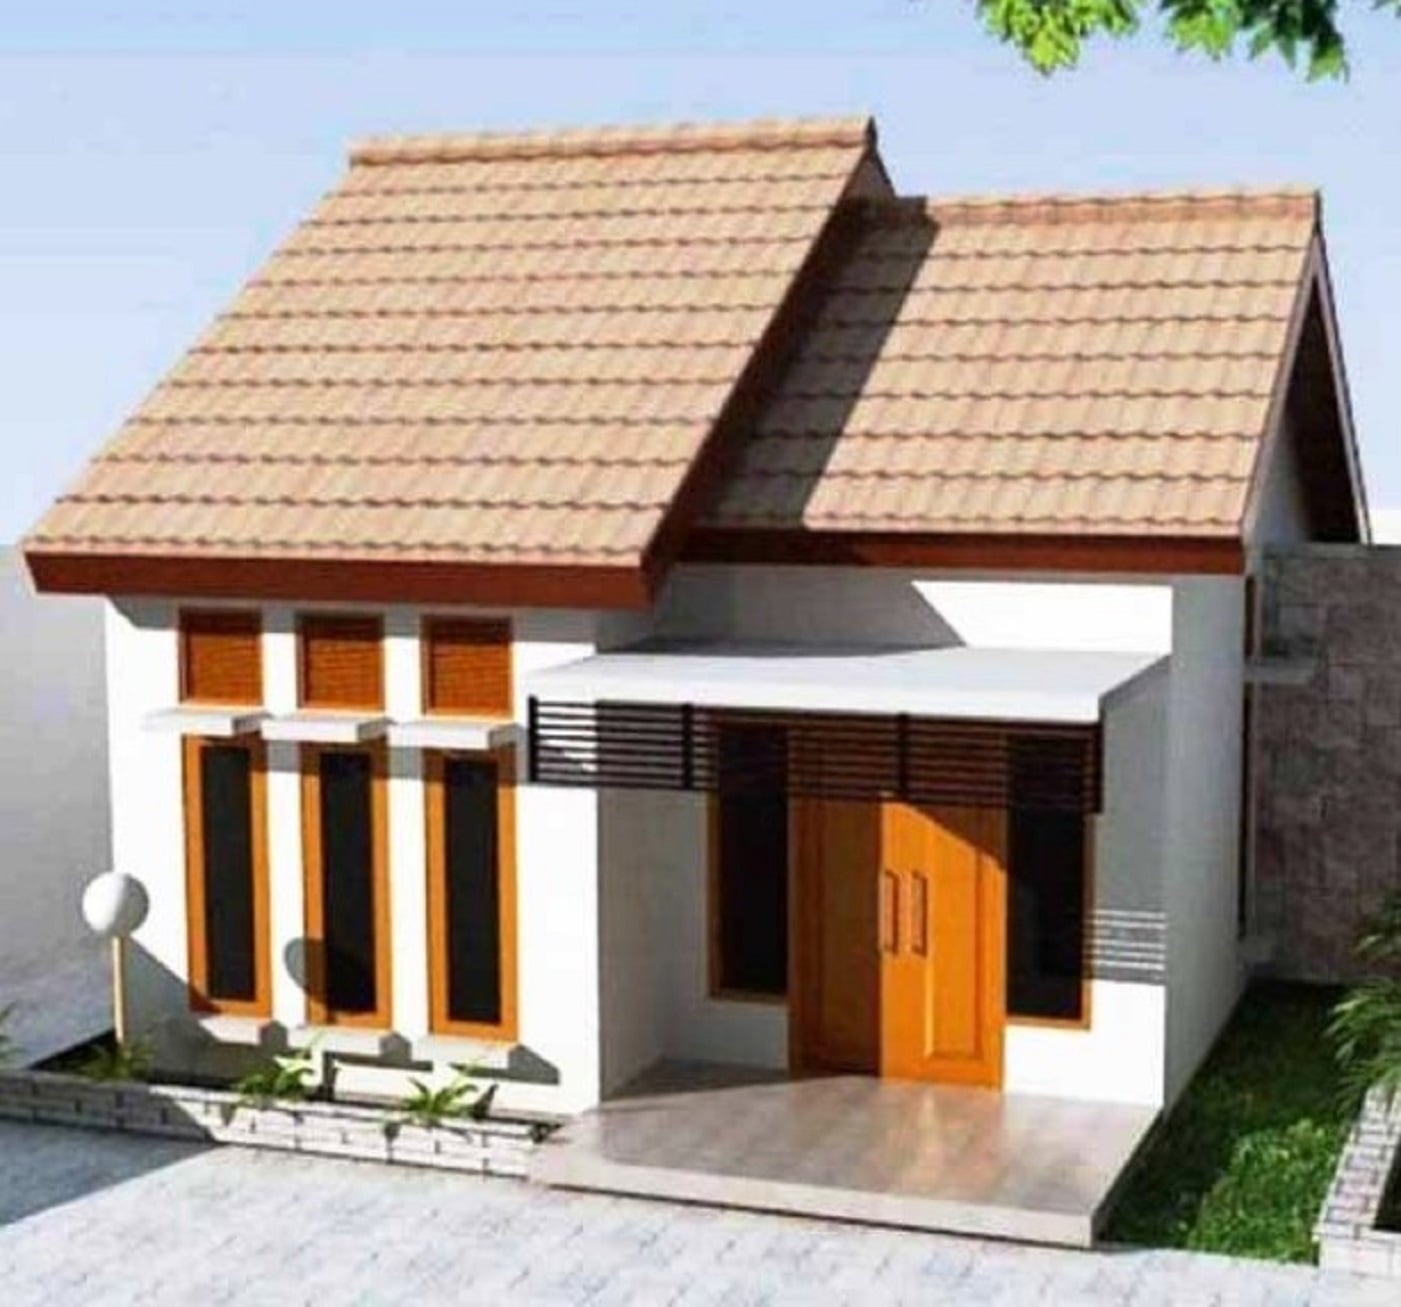 59 Gambar Model Desain Rumah Minimalis Sederhana Terbaru Dan Terlengkap Arcadia Design Architect